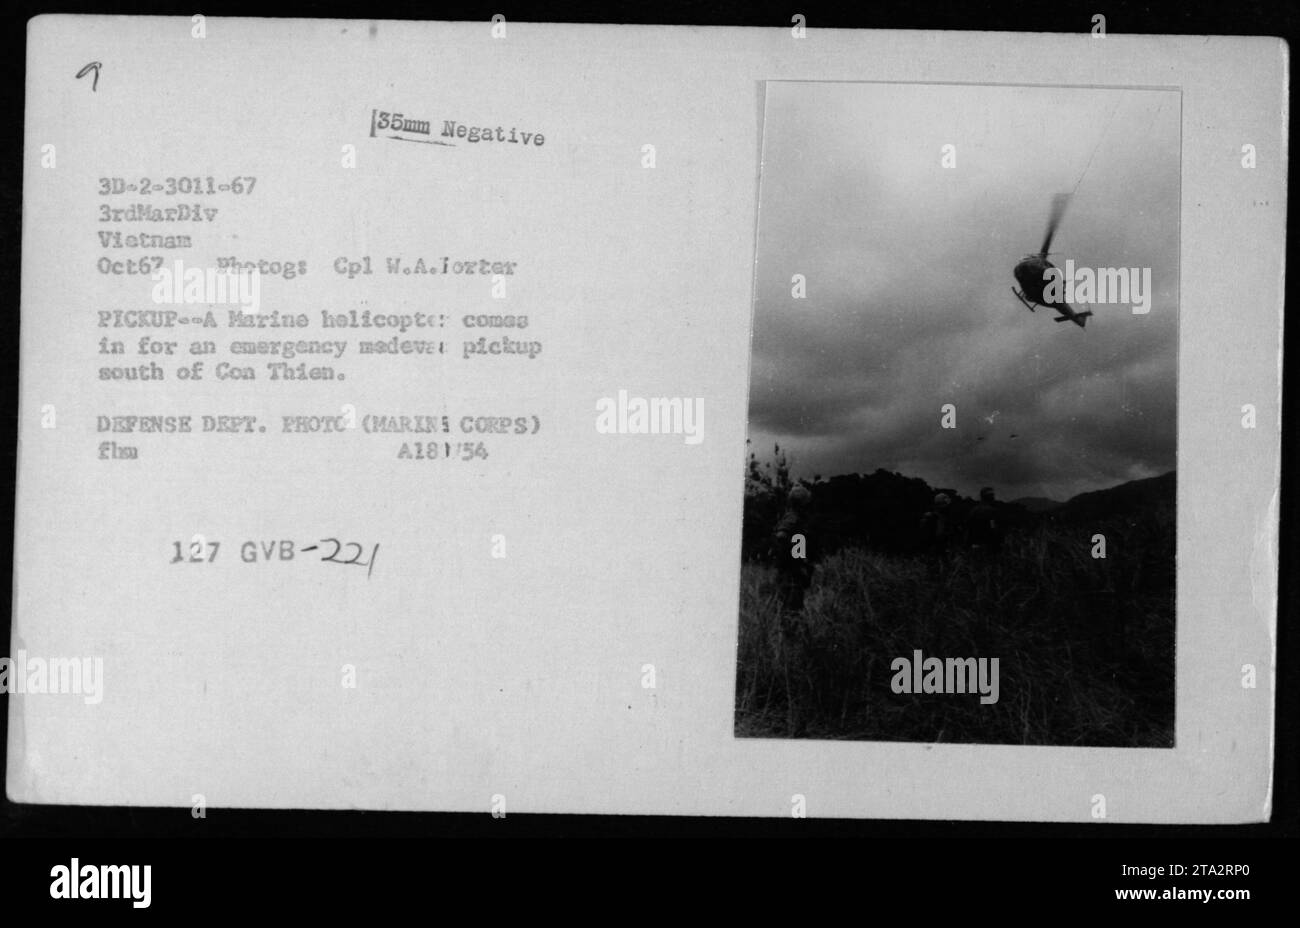 Un elicottero marino esegue una missione di emergenza di raccolta medevac vicino a con Thien nel Vietnam del Sud, ottobre 1967. Gli elicotteri UH-1 vengono catturati in azione mentre trasportano il personale ferito. Questa fotografia fa parte della collezione che documenta le attività militari americane durante la guerra del Vietnam. Foto Stock